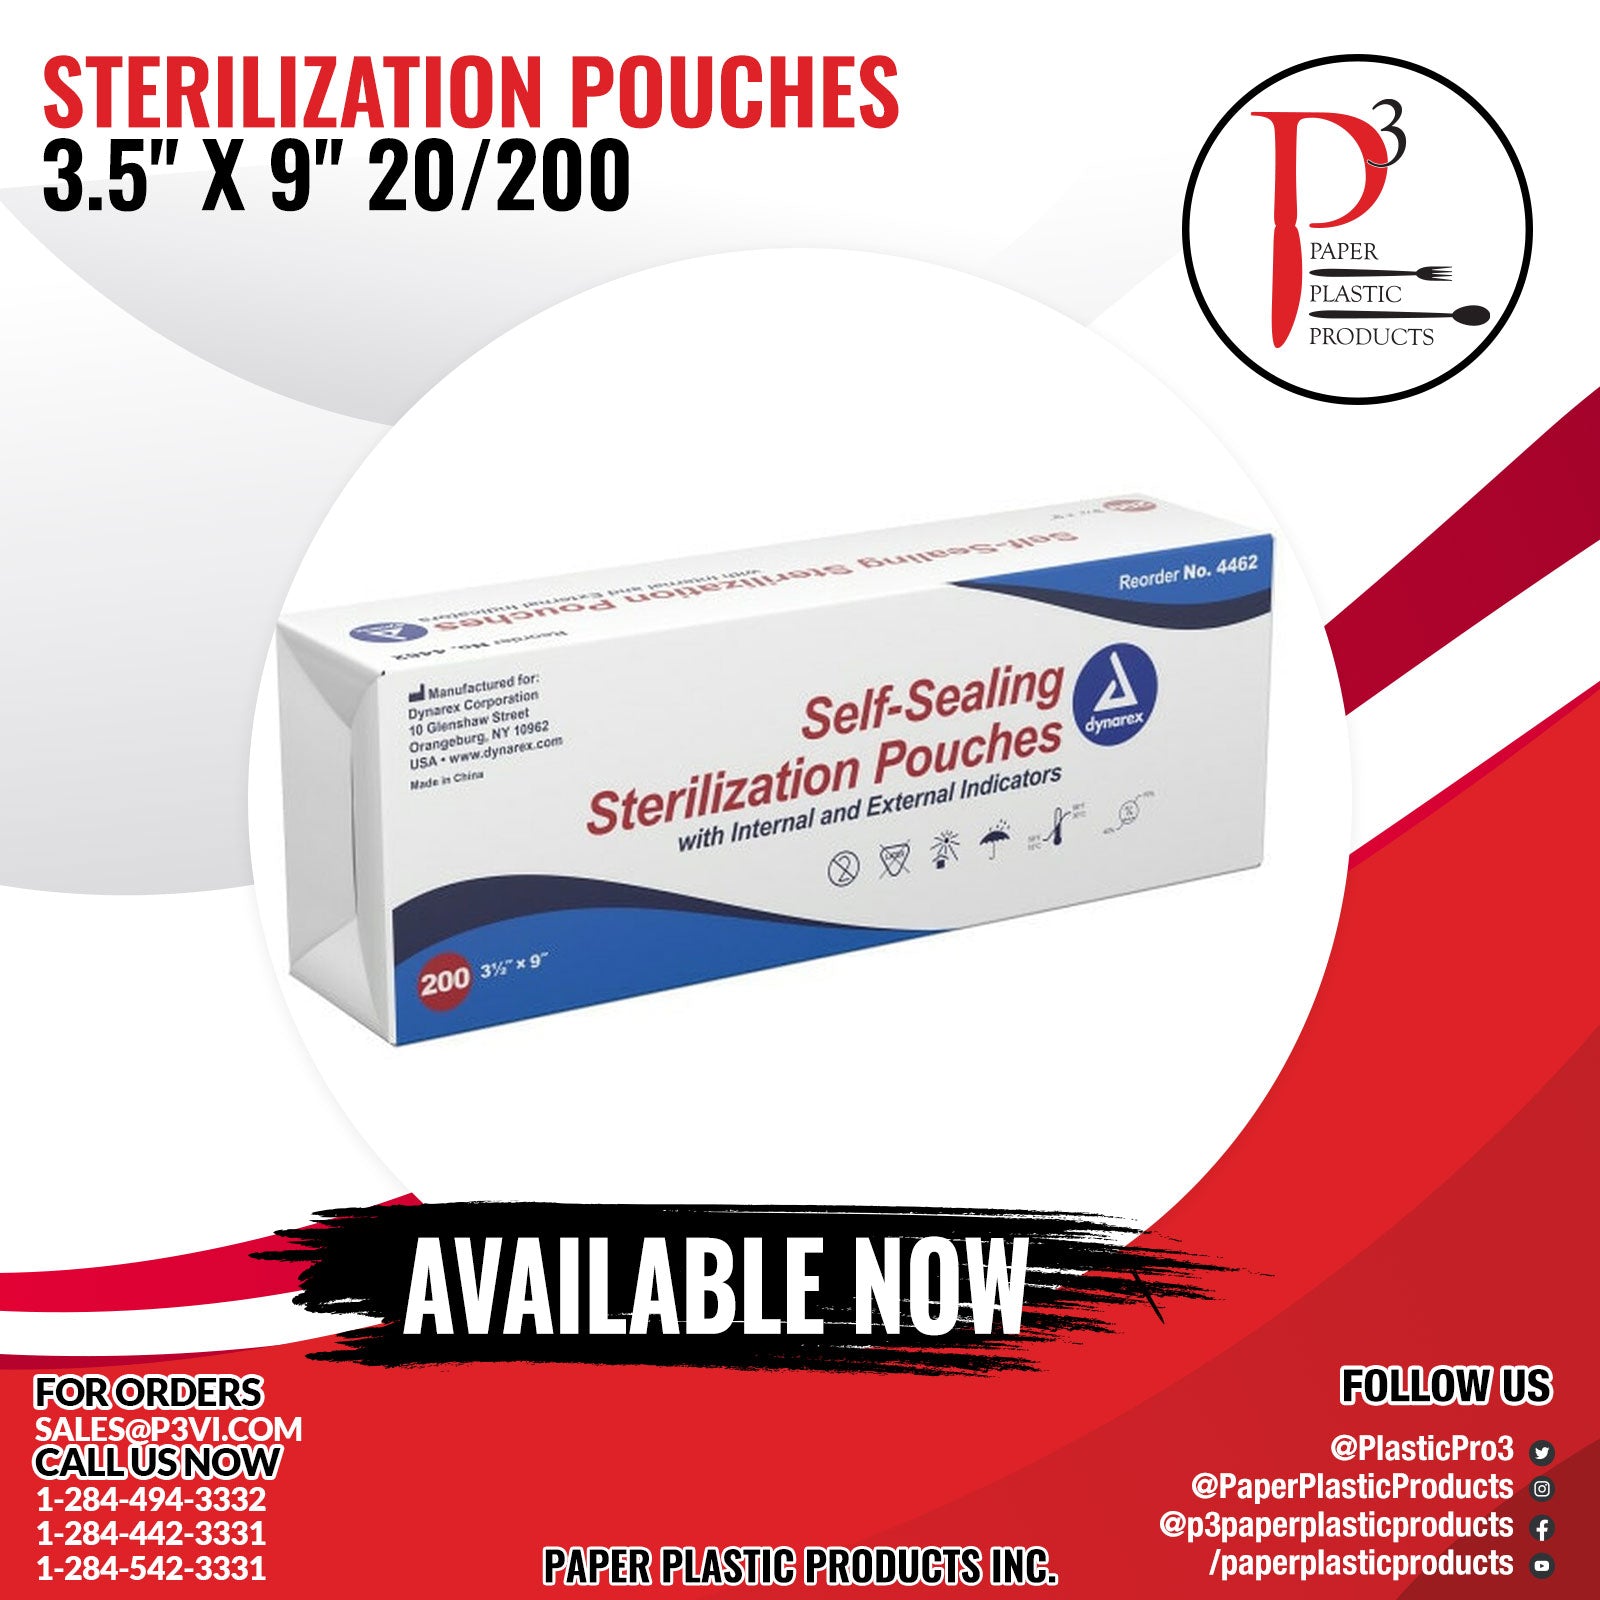 Sterilization Pouches 3.5" x 9" 20/200